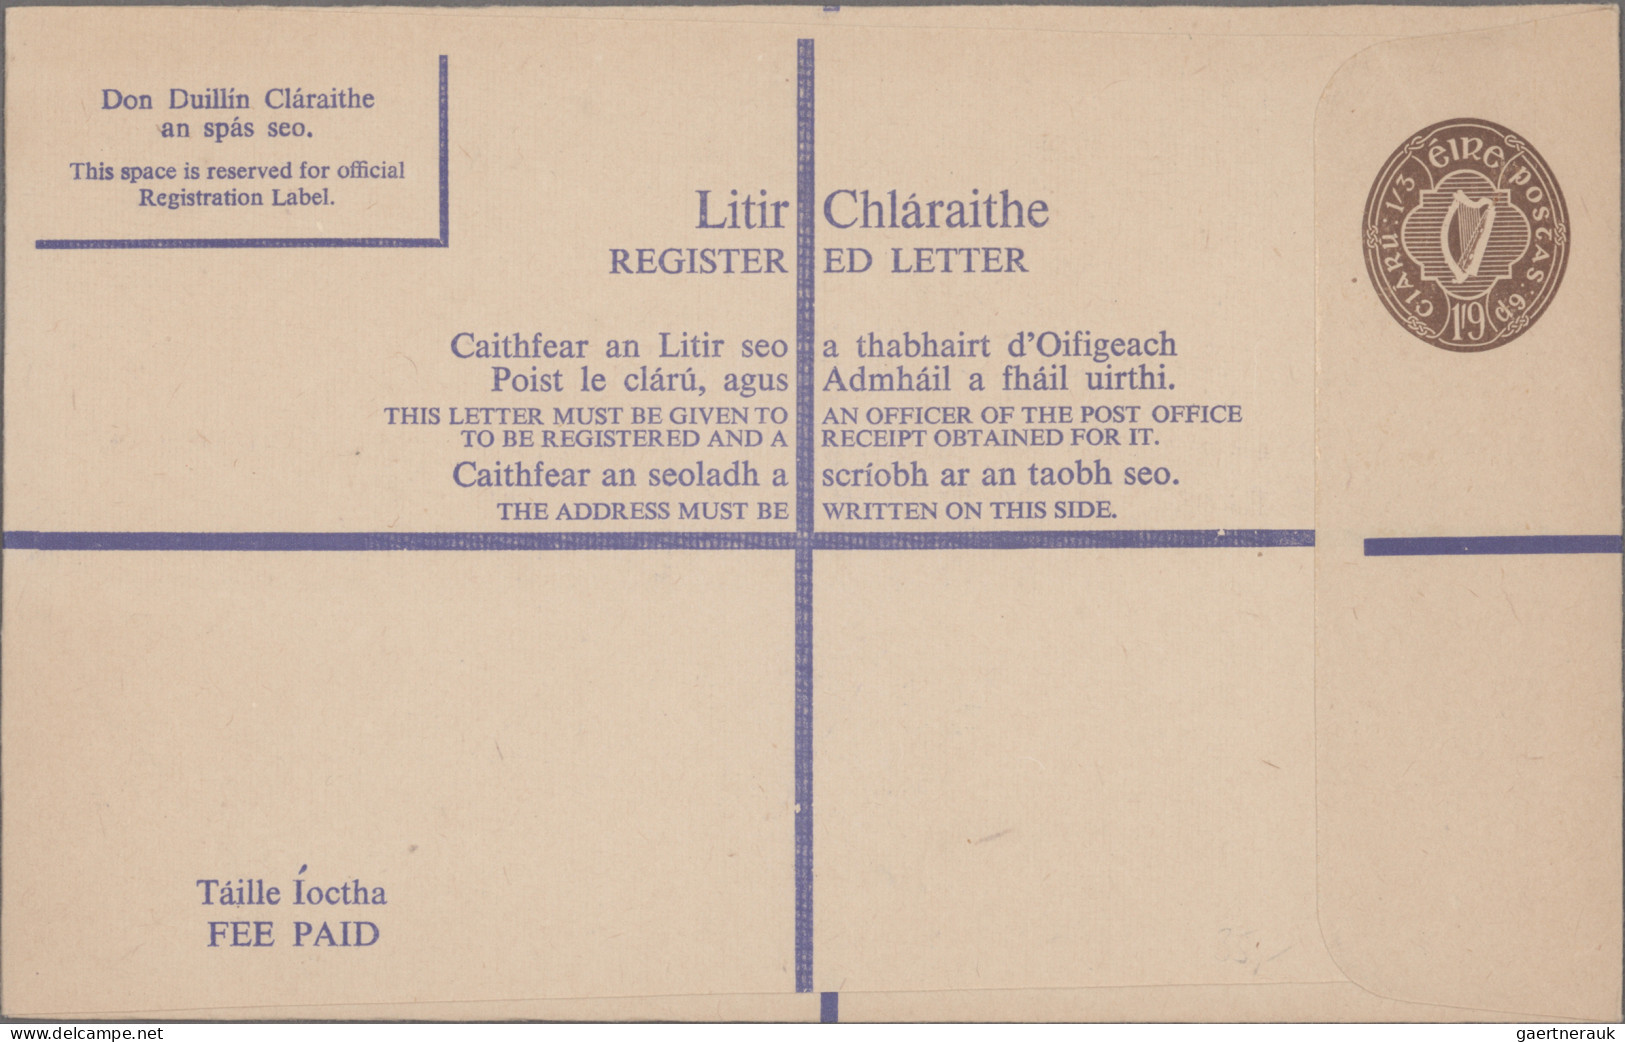 Ireland: 1936/1996, lot of 14 covers/cards, thereof nine unused/unused stationer